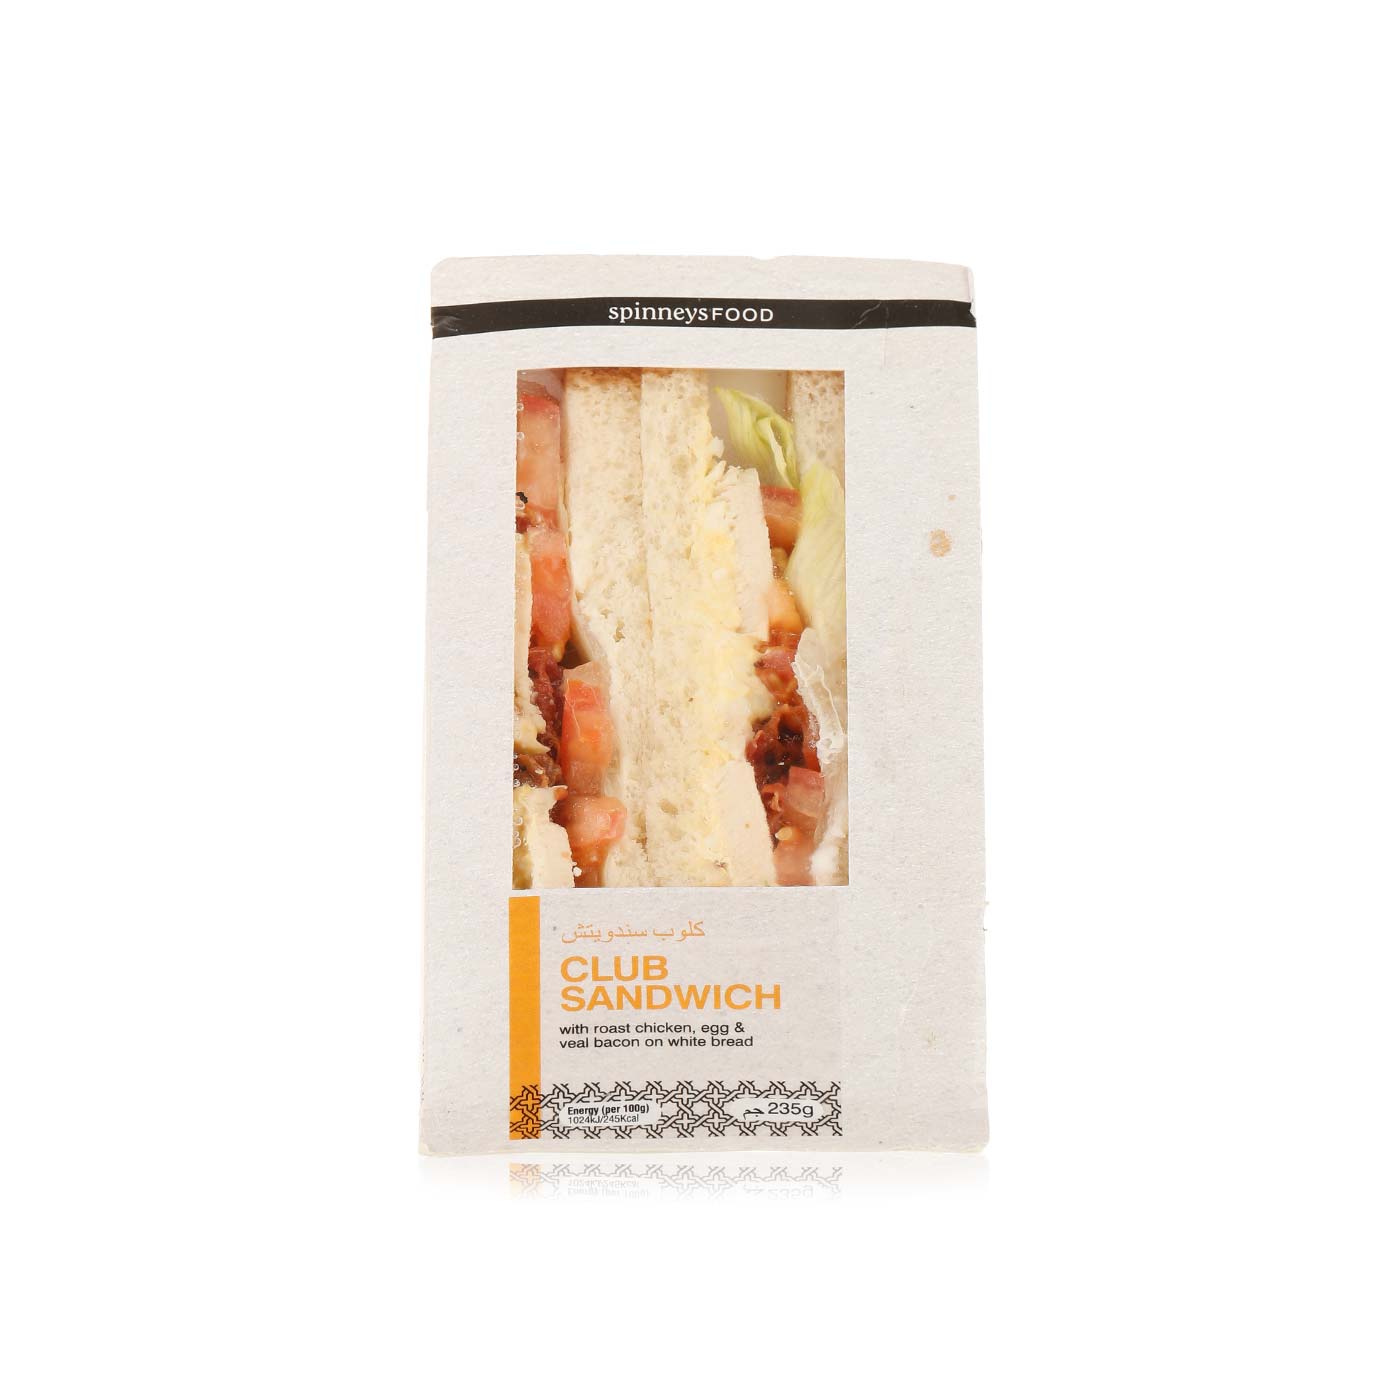 SpinneysFOOD club sandwich 249g - Spinneys UAE